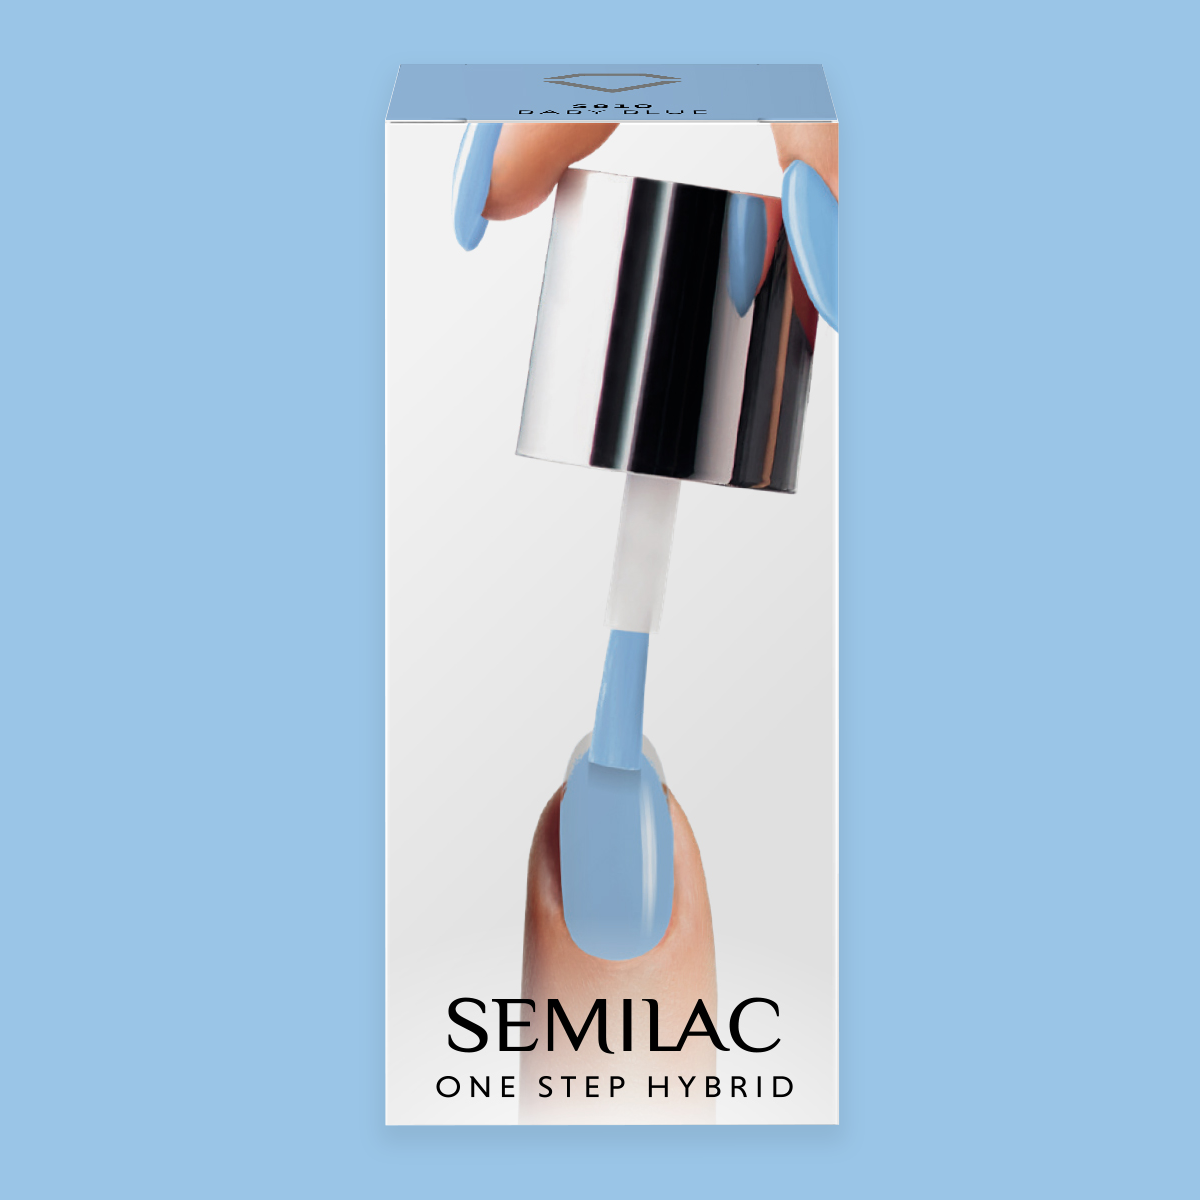 Semilac One Step Hybrid Starter Set CUSTOMISED with 24/15W Lamp - Semilac UK